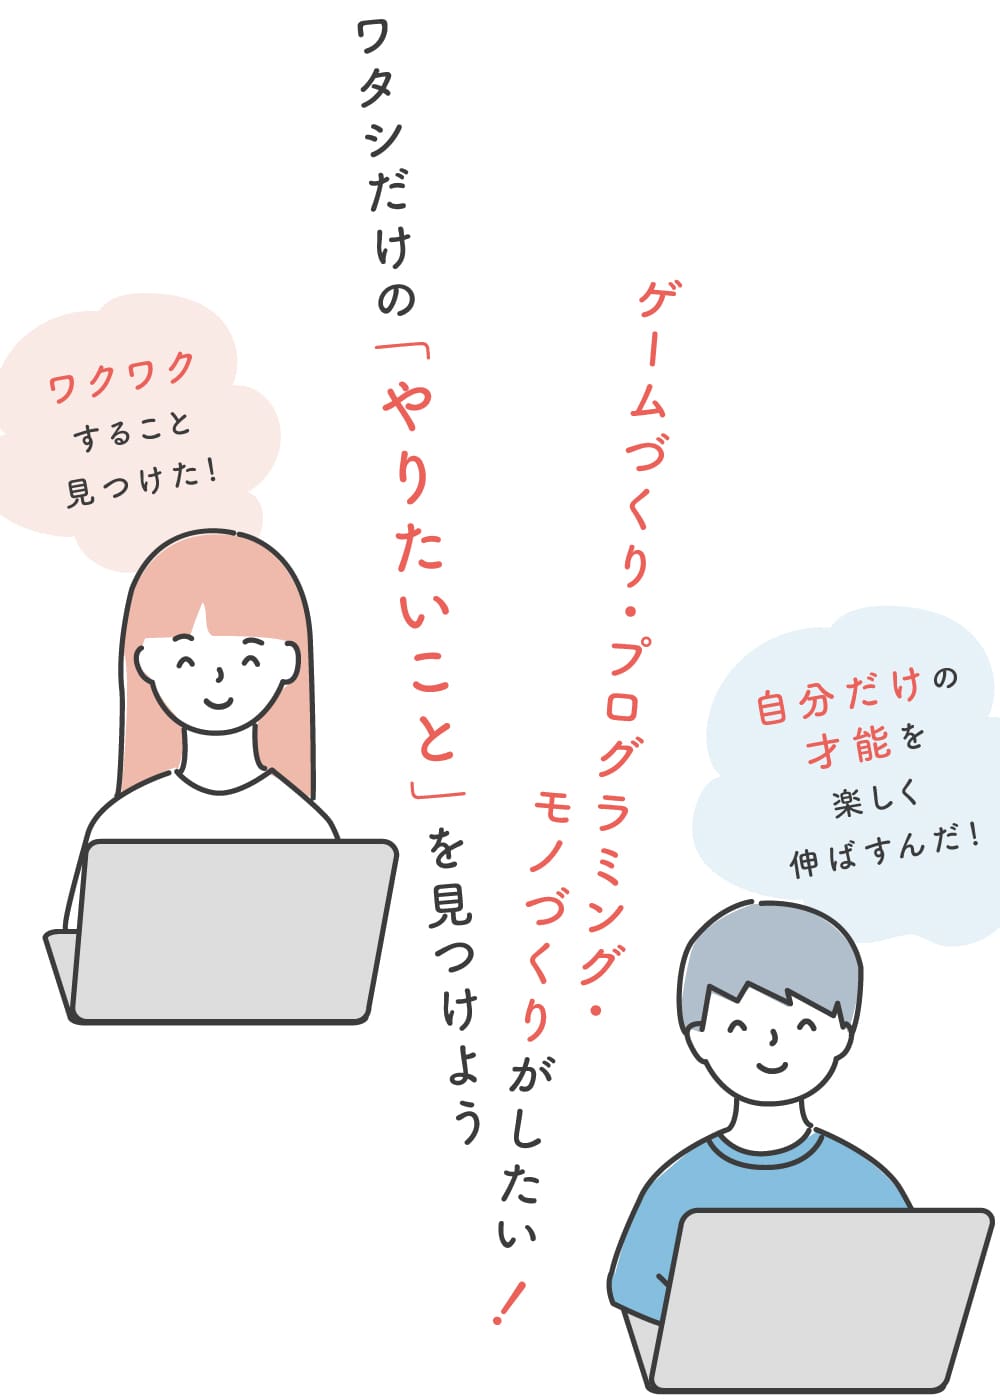 小中学生からプログラミングを学ぶなら、長岡京市にあるプログラミング教室（長岡京コワーキングスペース / 運営会社：ヒューマンオーク）